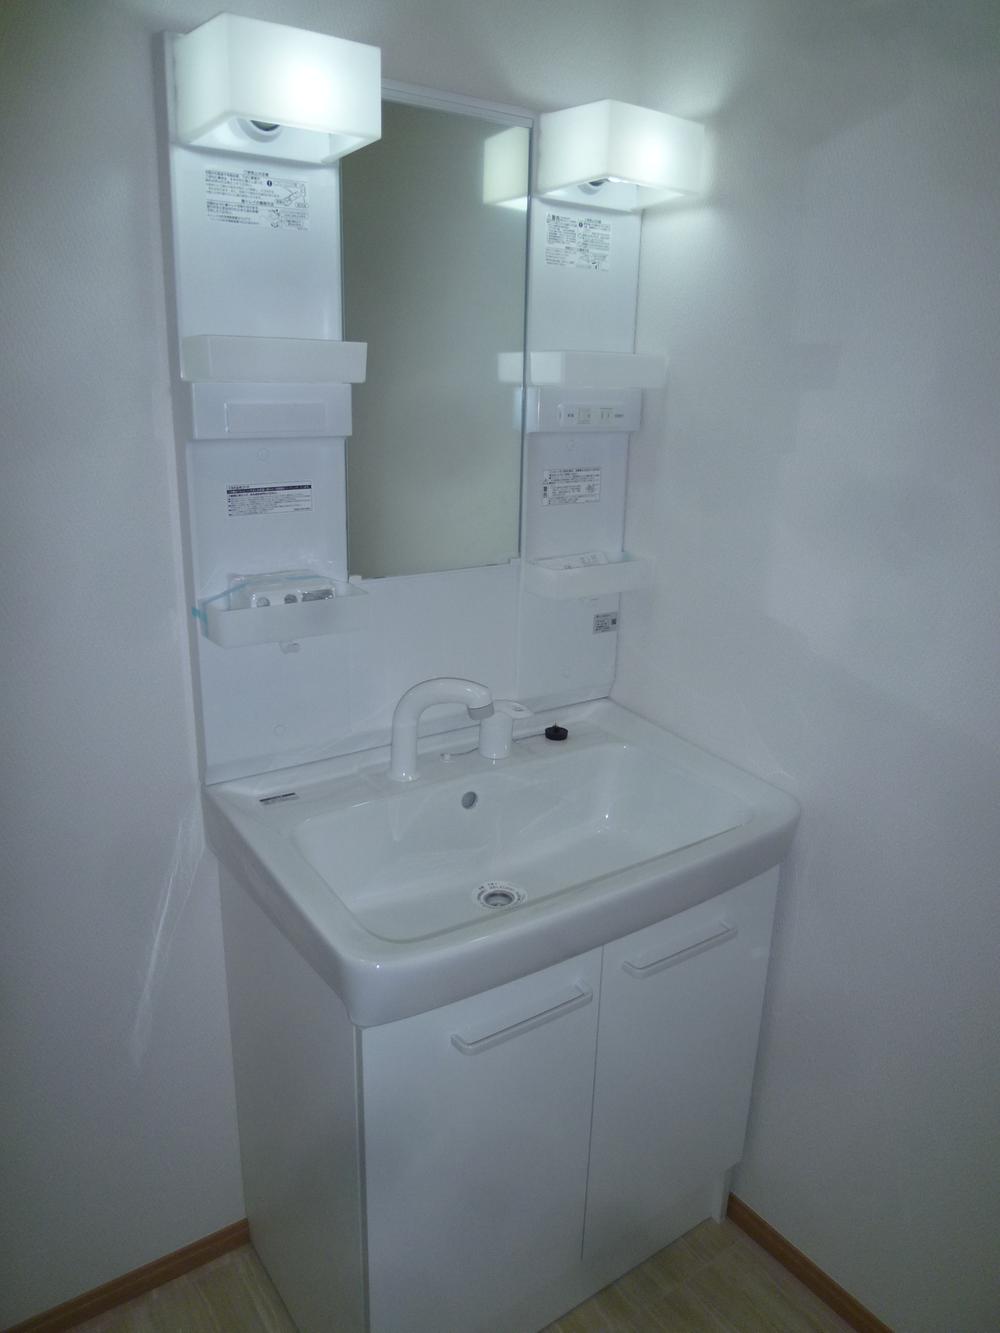 Wash basin, toilet. Indoor (December 27, 2013) Shooting